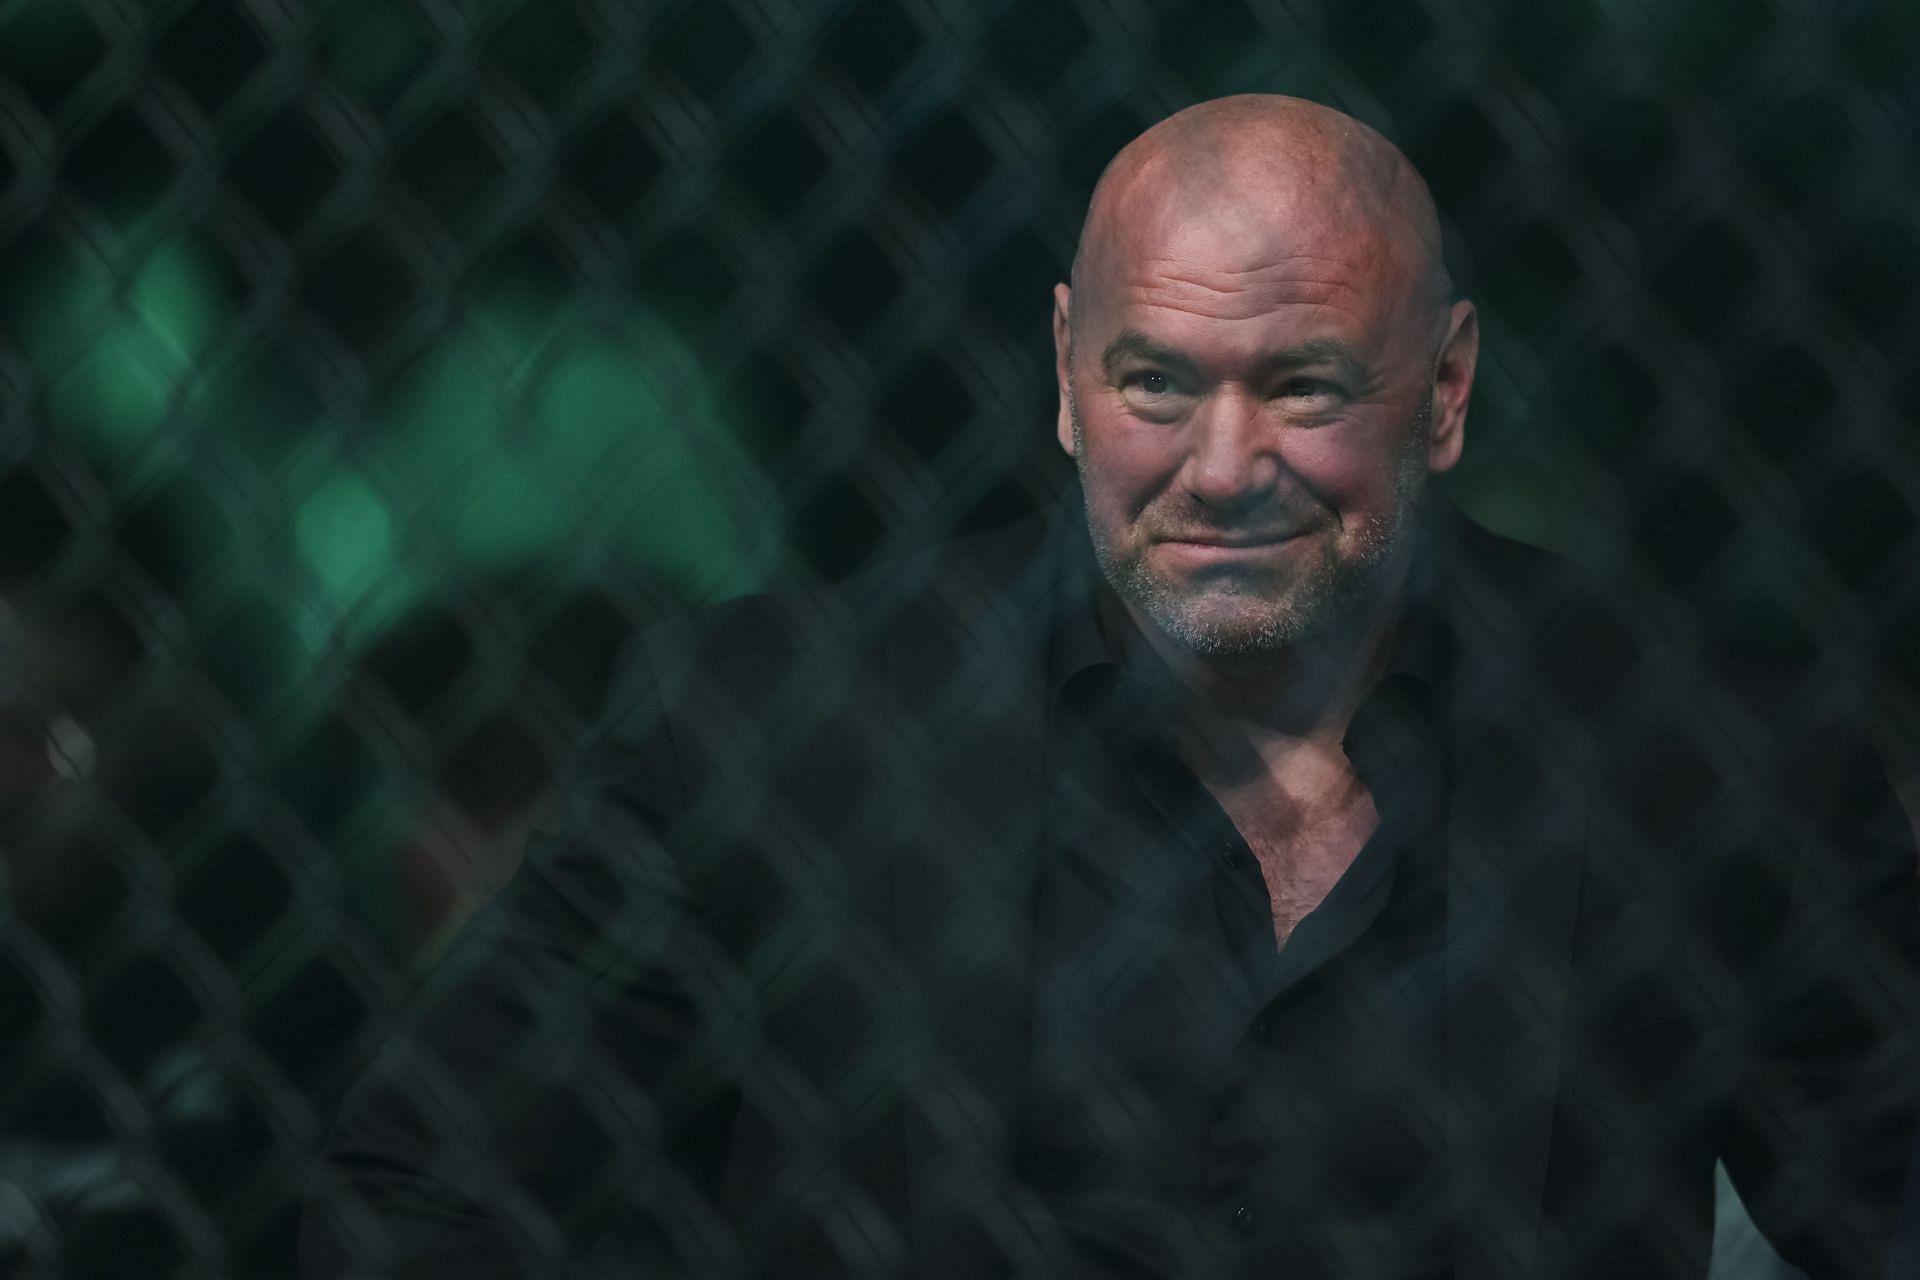 Dana White attending UFC 273: Volkanovski vs. The Korean Zombie [Image via Getty]